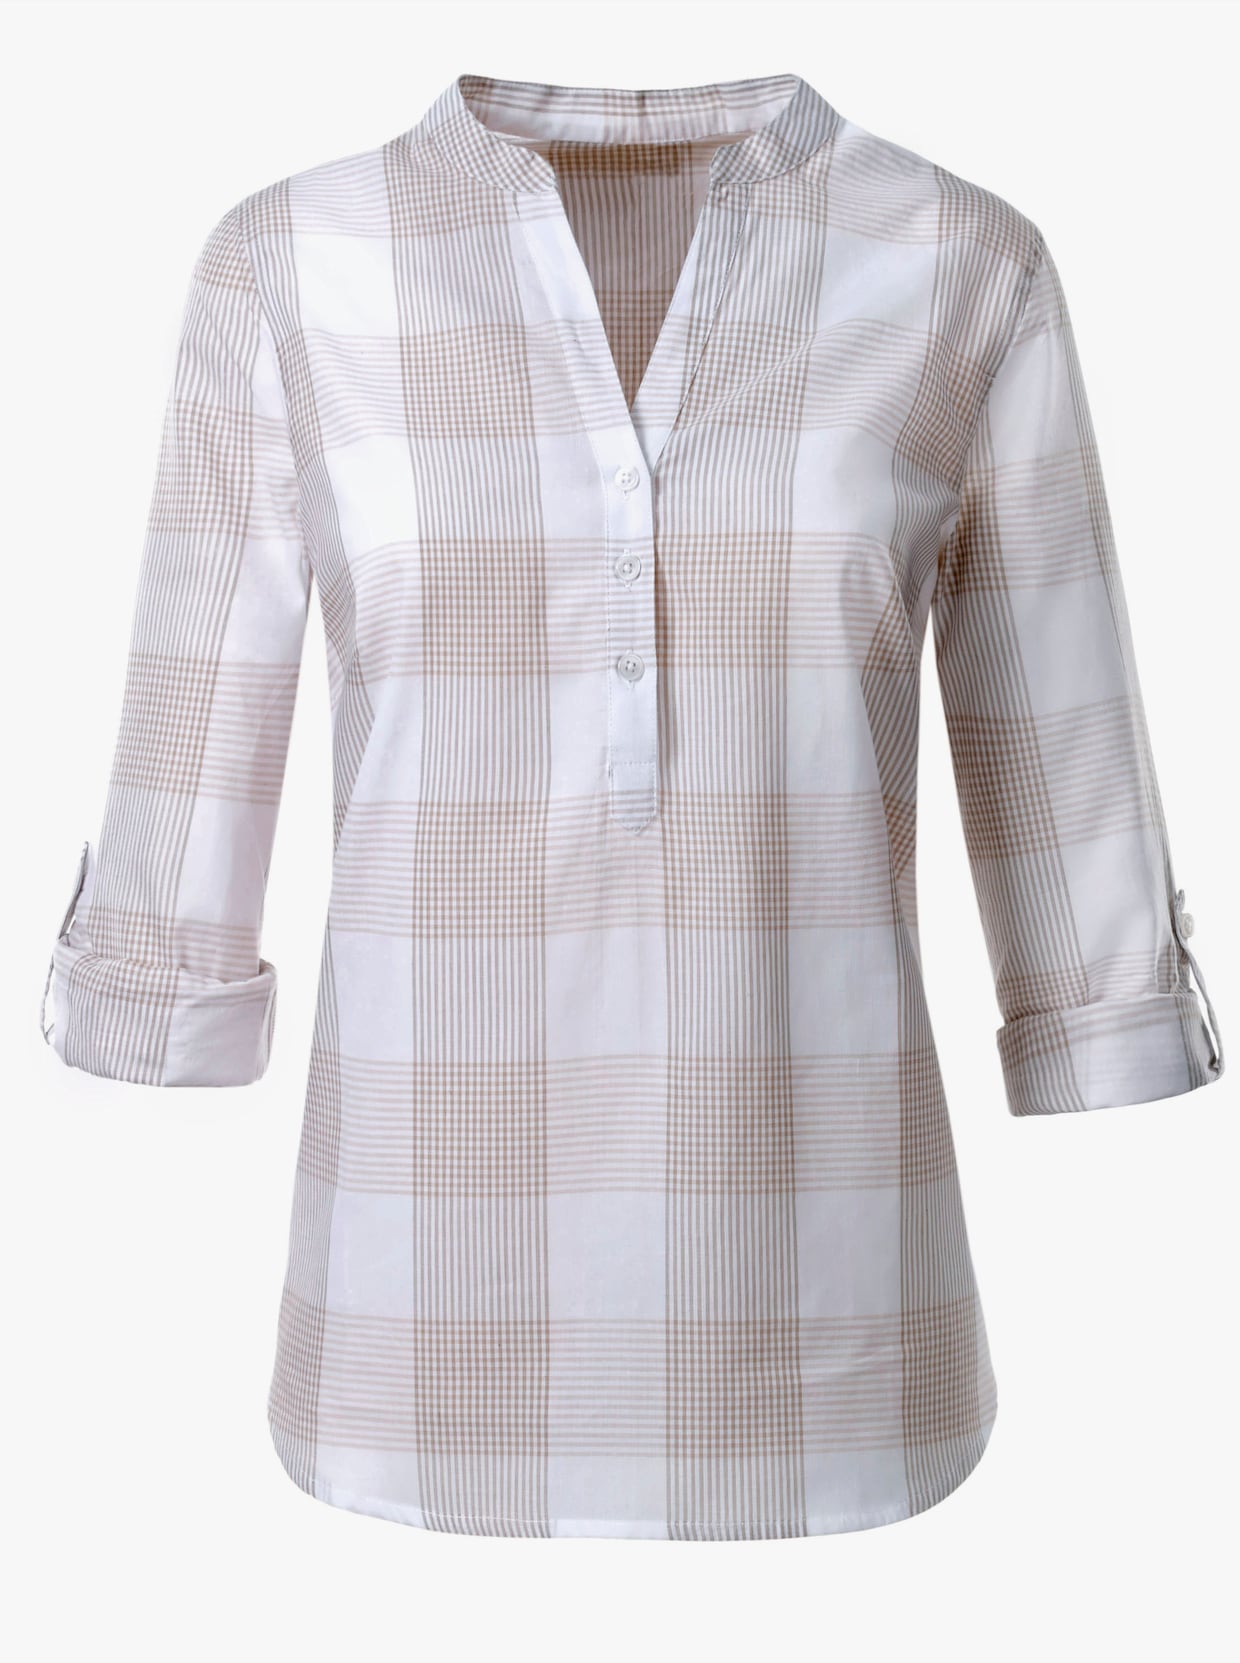 Katoenen blouse - taupe/wit geruit